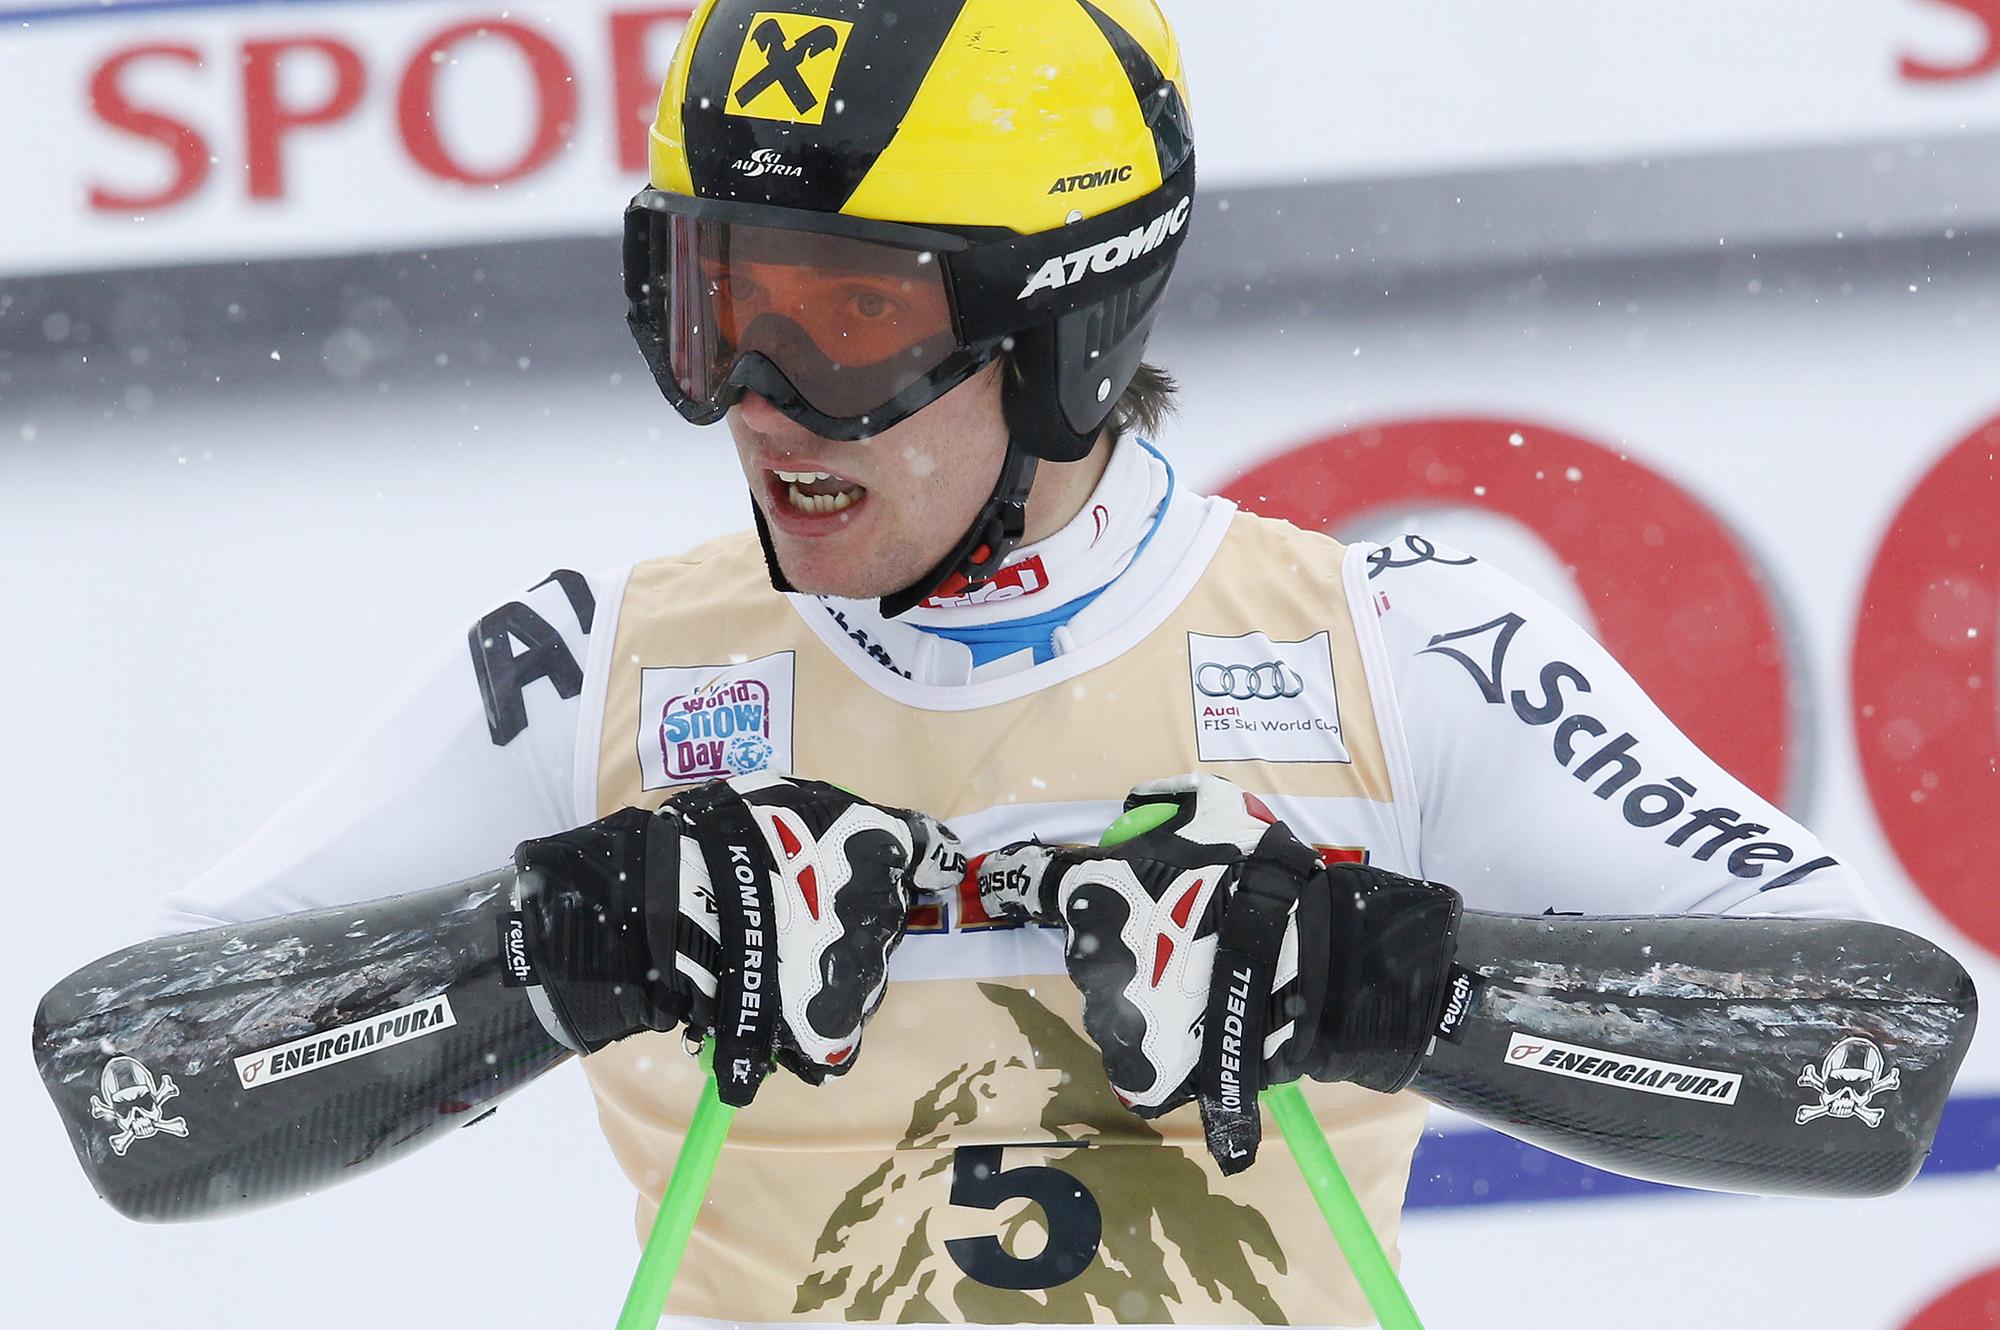 Vainqueur du slalom nocturne de Zagreb jeudi, Hirscher a enlevé le géant d'Adelboden. [REUTERS - REUTERS/Michael Buholzer]